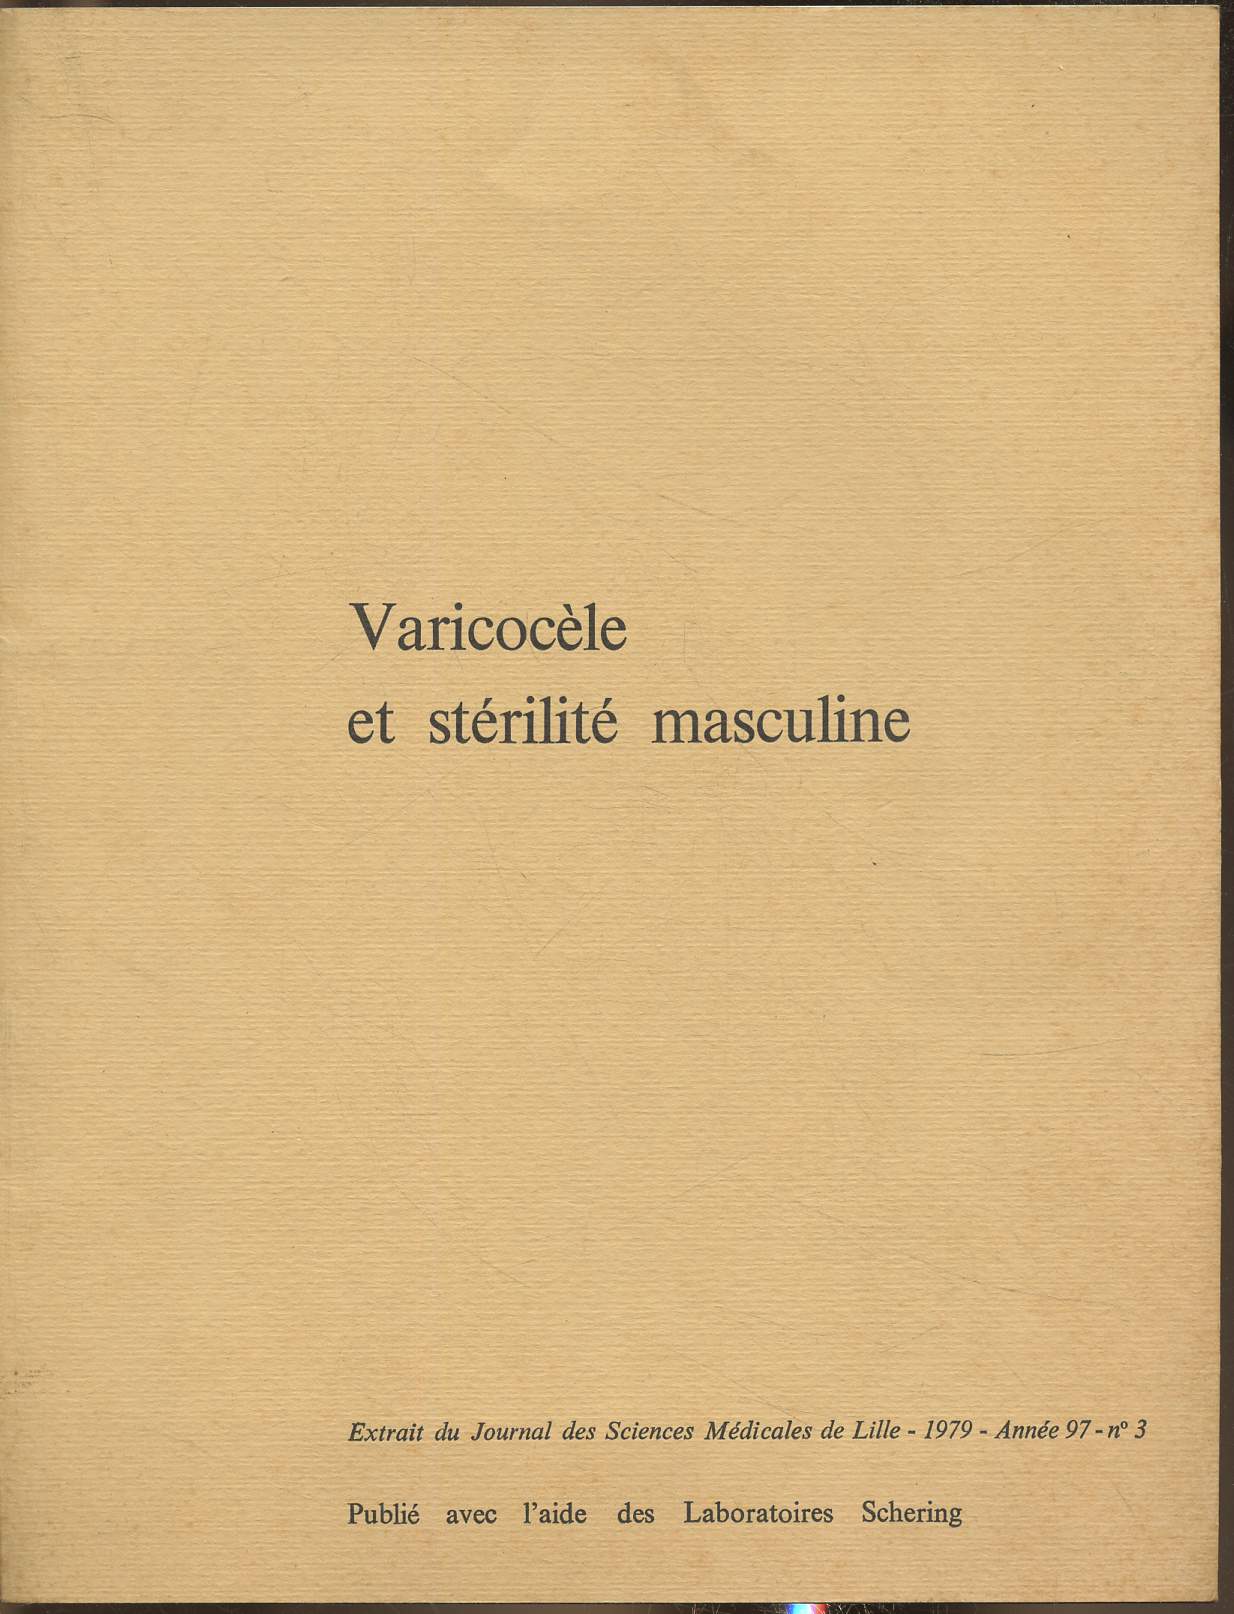 Varicocle et strilit masculine- Extrait du Journal des Sciences mdicales de Lille 1979, anne 97, n3